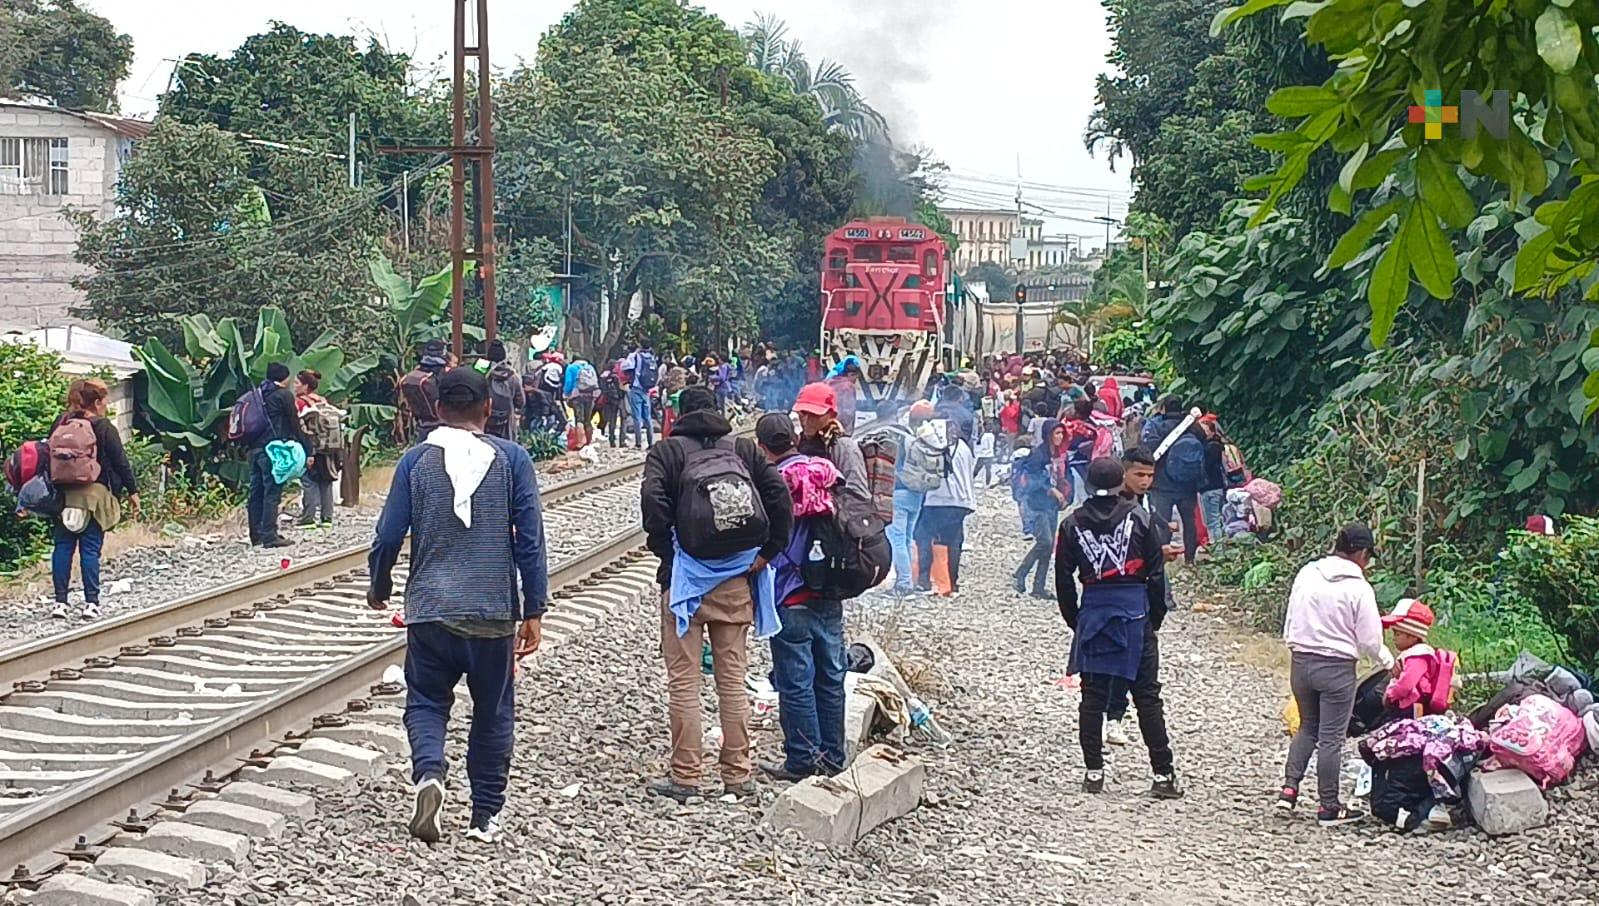 México y Venezuela estrechan cooperación en materia migratoria